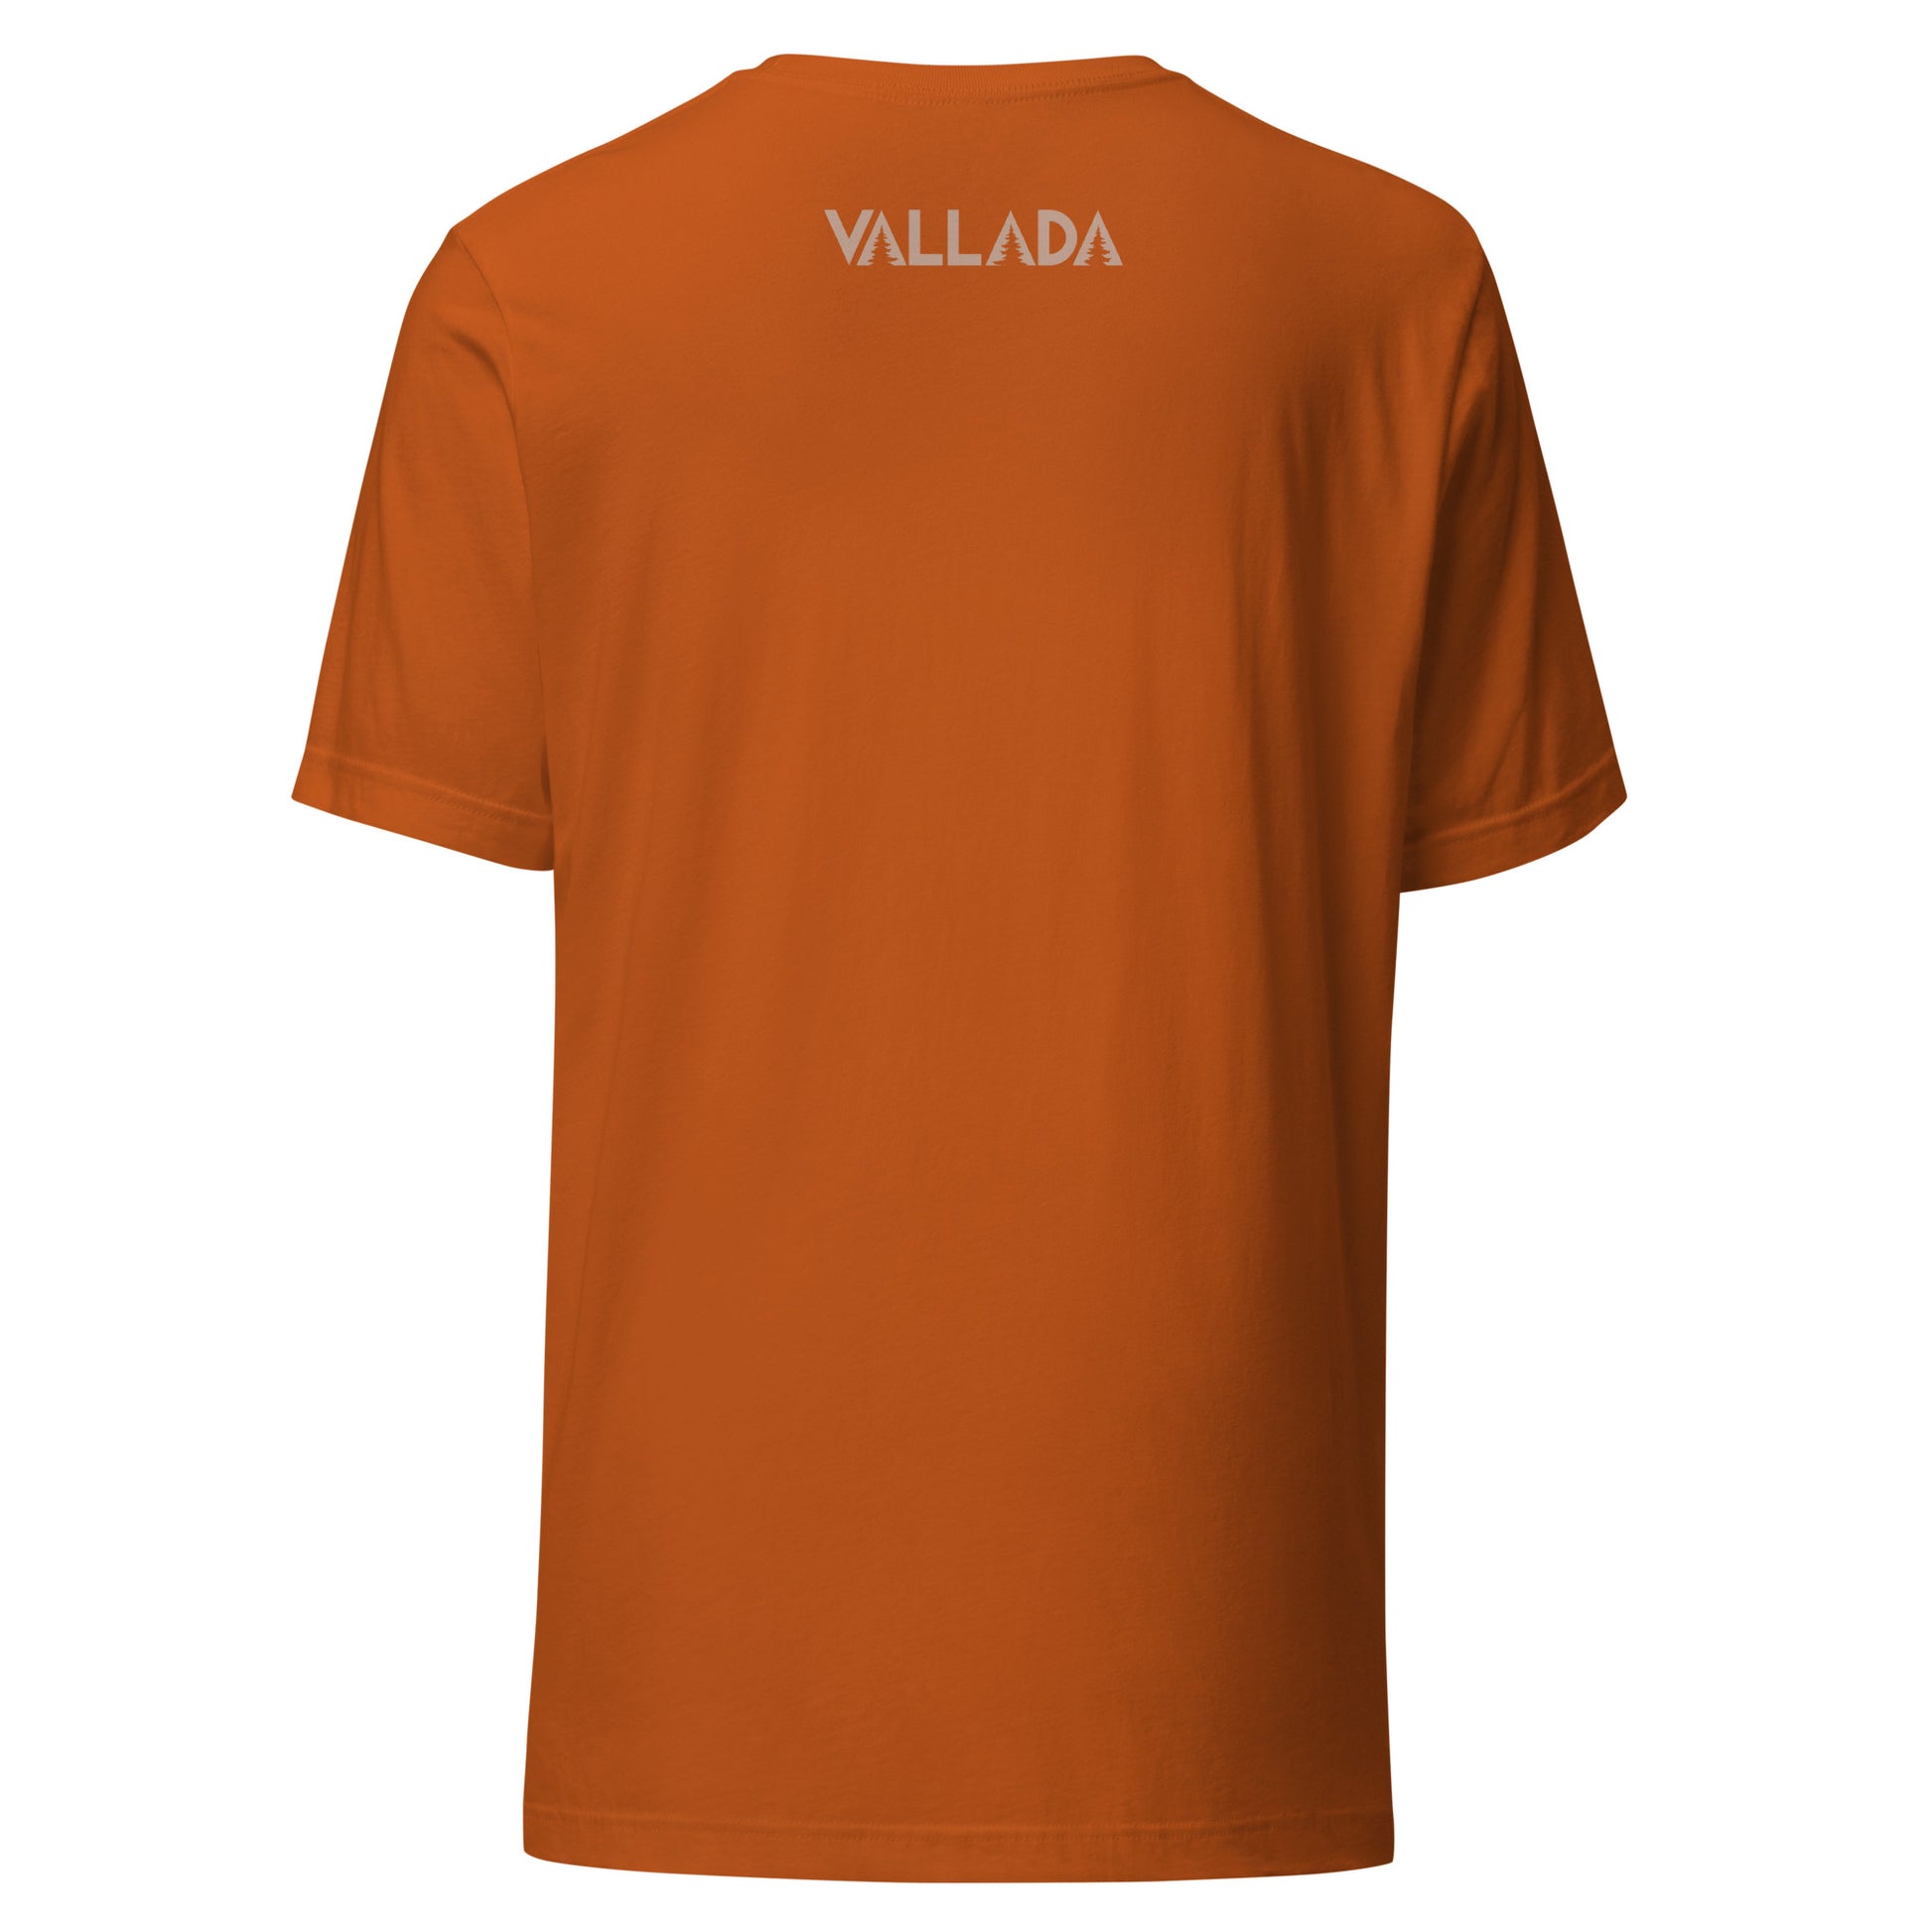 Rückseite eines orangen Damen T-Shirt. 